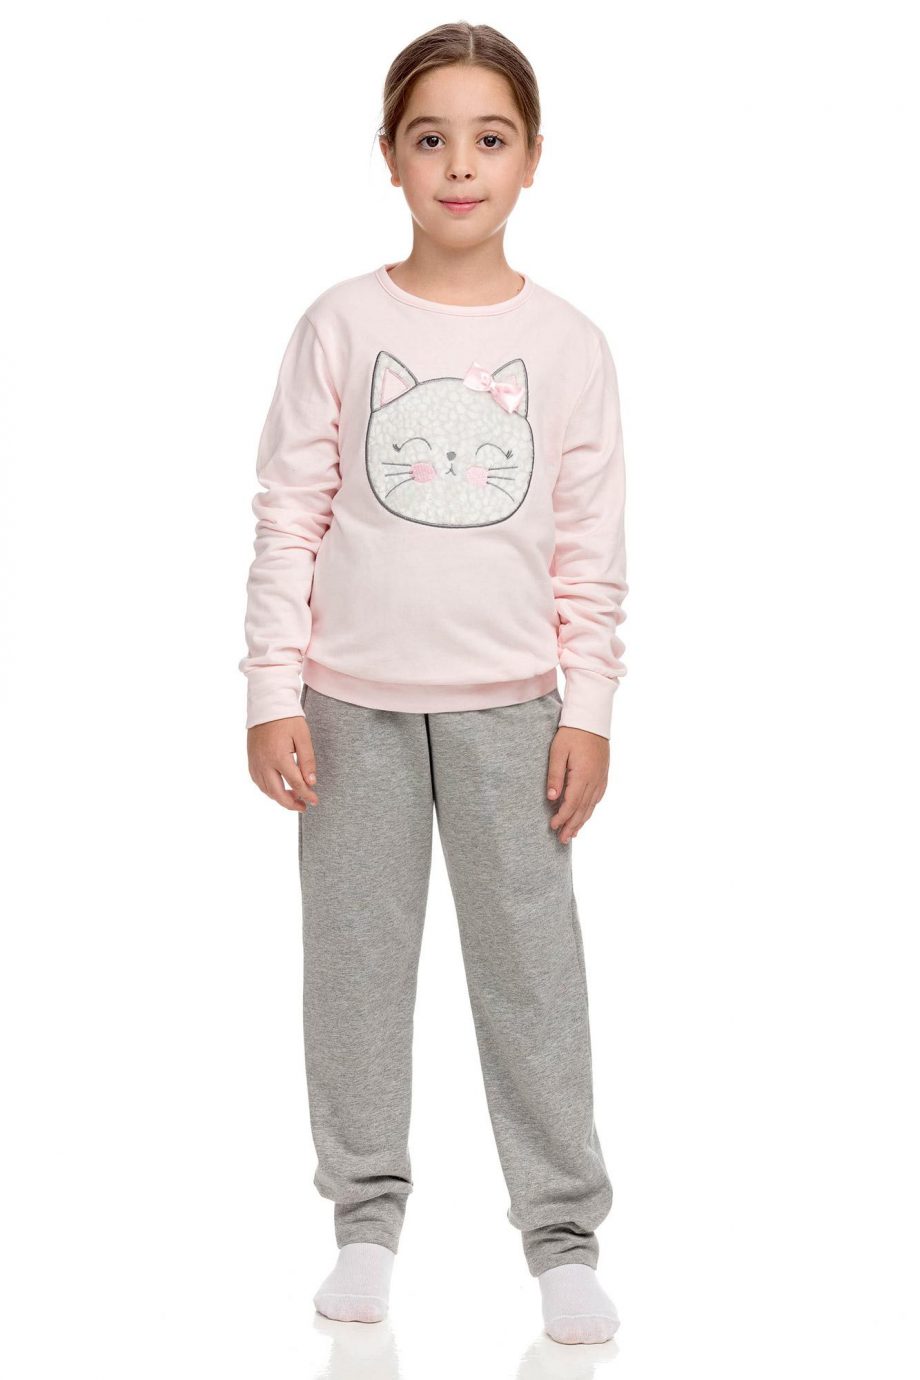 Cotton Pyjamas for kids